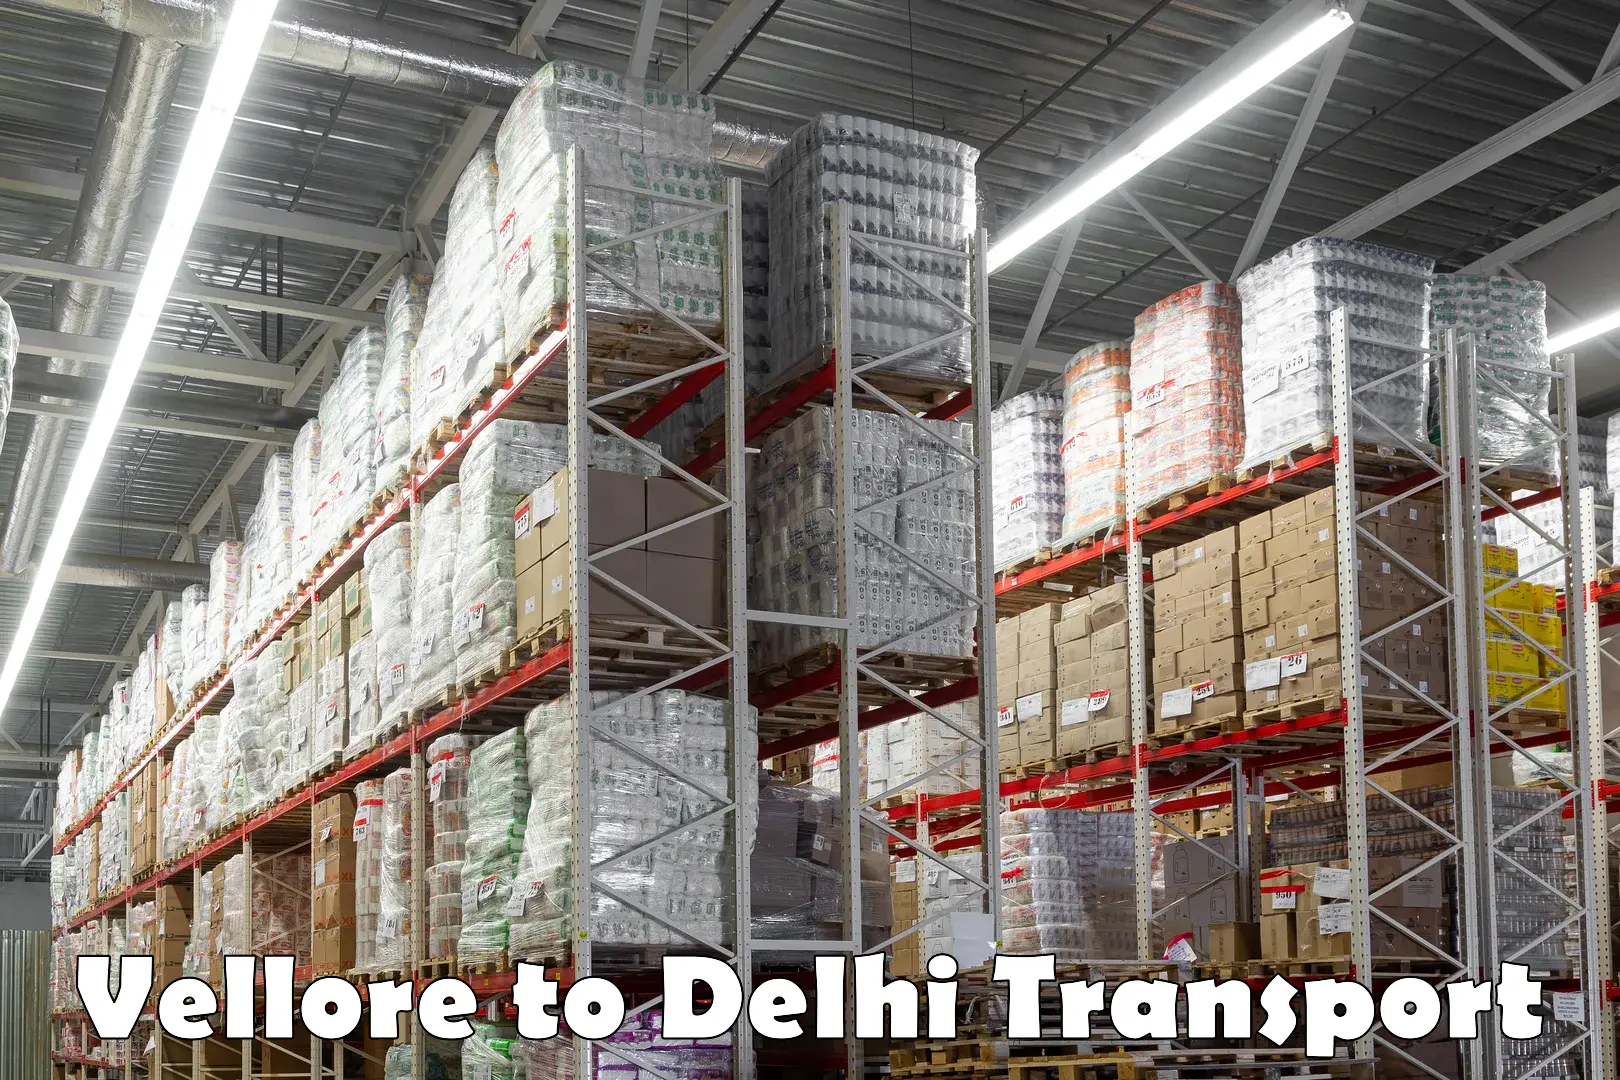 Bike shipping service Vellore to Delhi